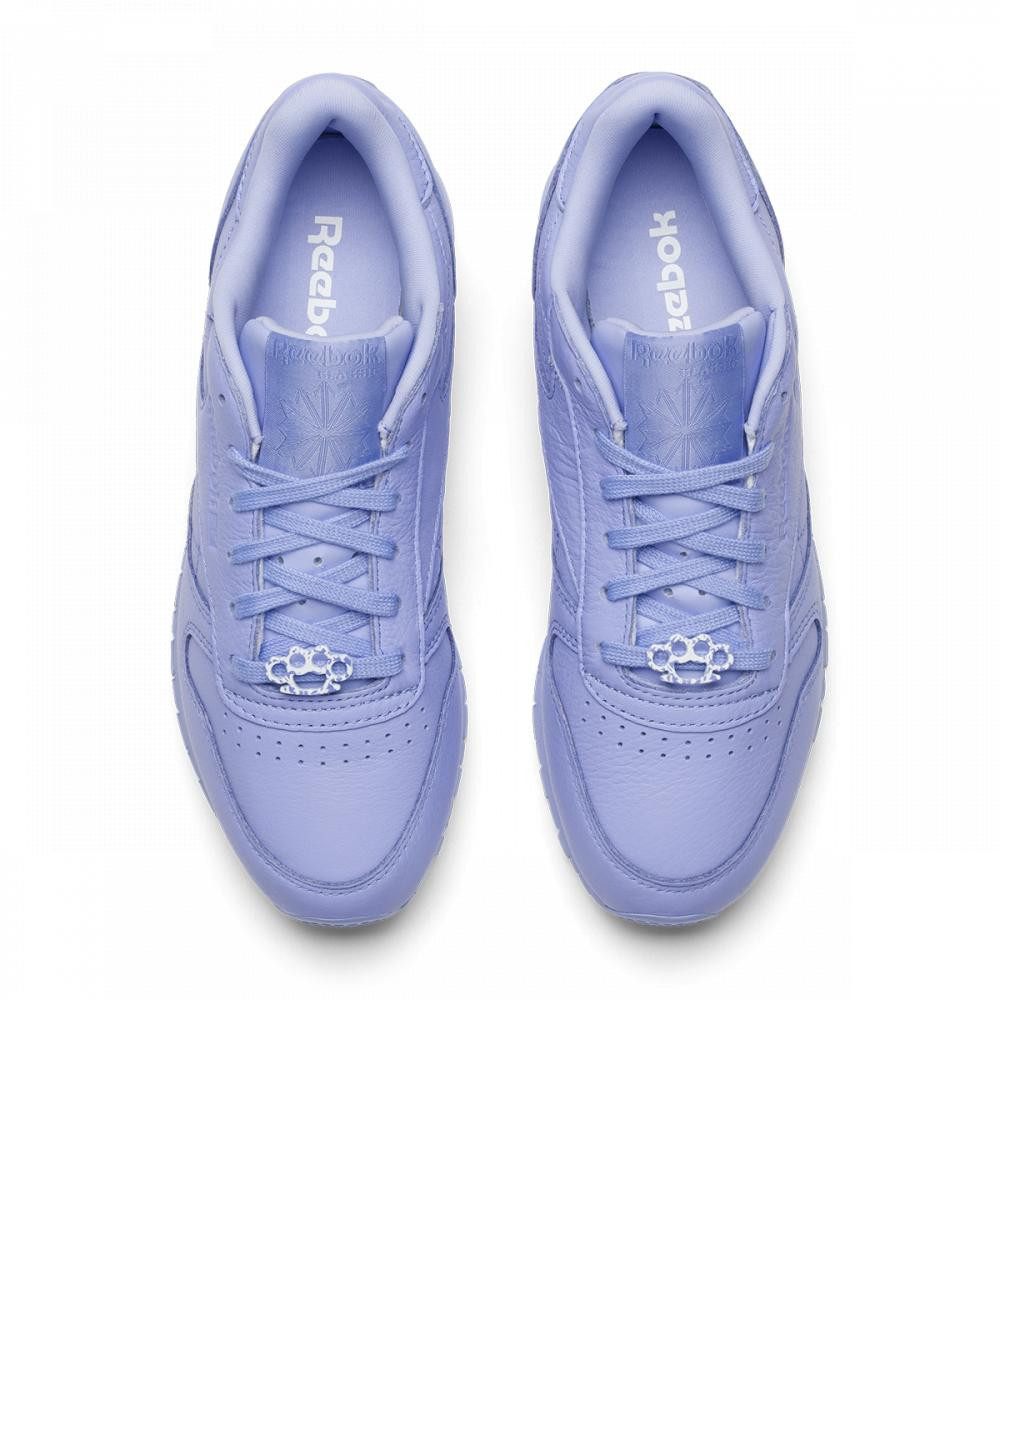 Фиолетовые демисезонные кроссовки classic leather lilac glow bs7913 Reebok